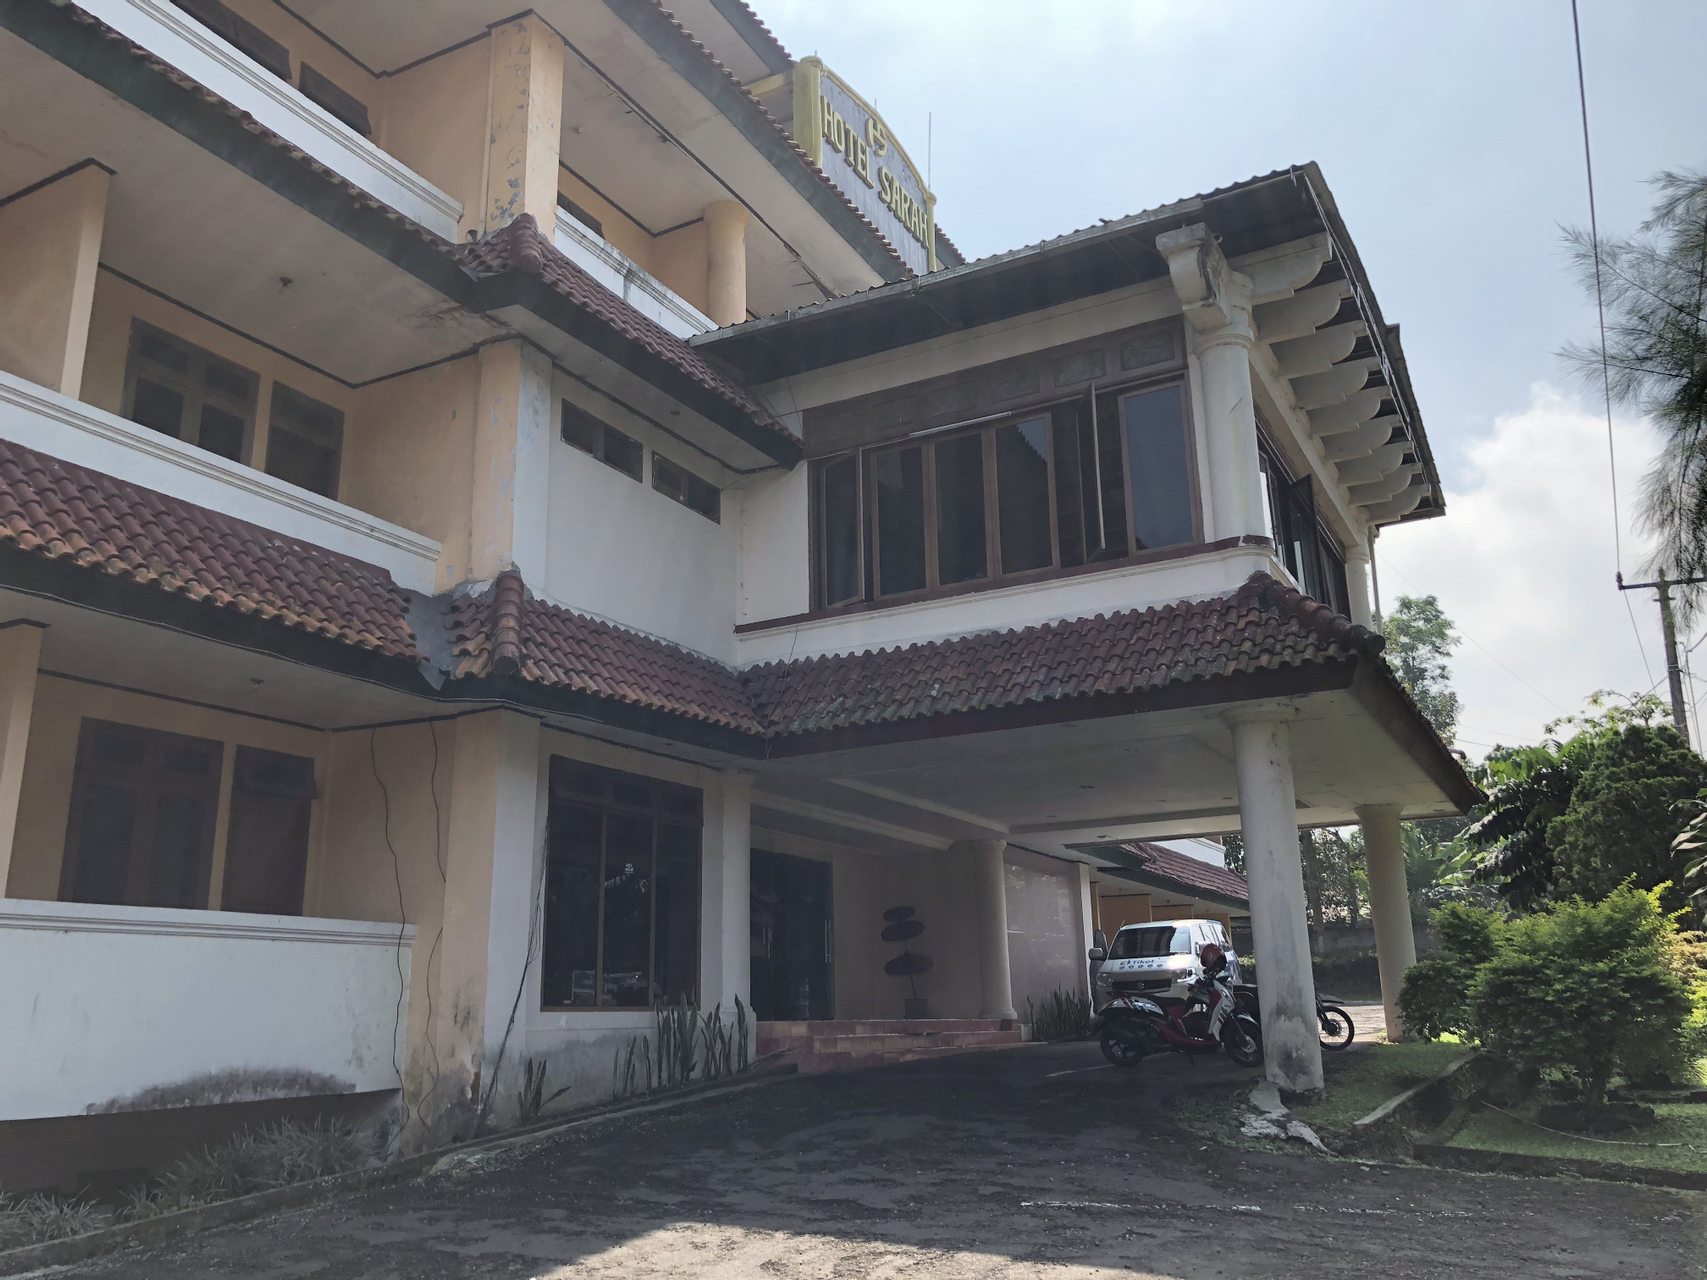 Exterior & Views 1, Hotel Sarah, Sukabumi